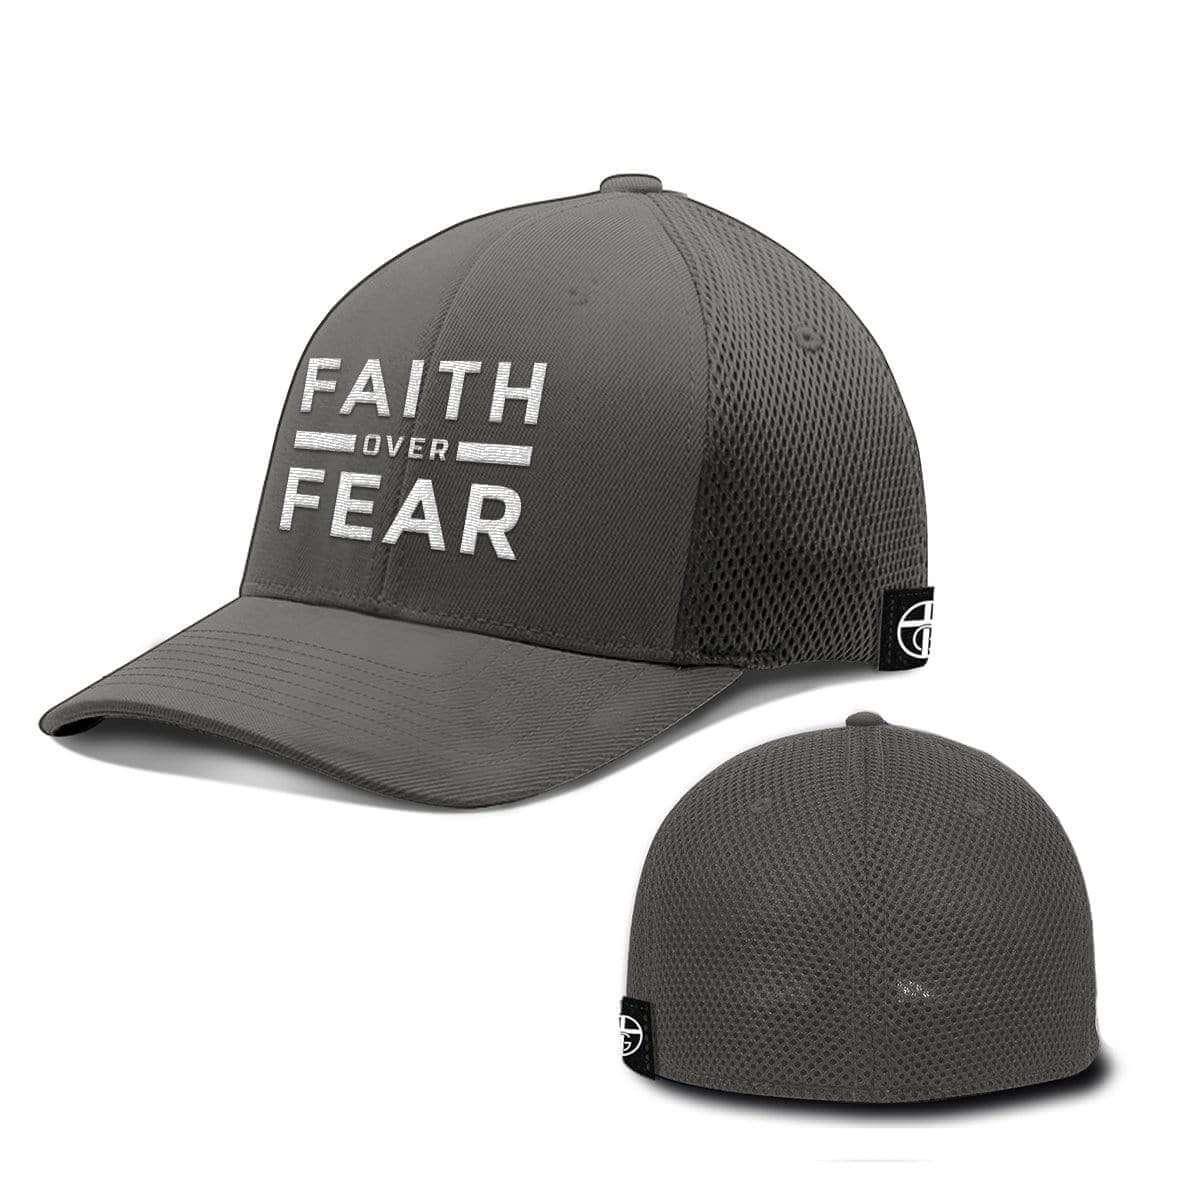 FBI FIRM BELIEVER IN JESUS Religion Adjustable Baseball Cap Hats LOT  1-12pieces